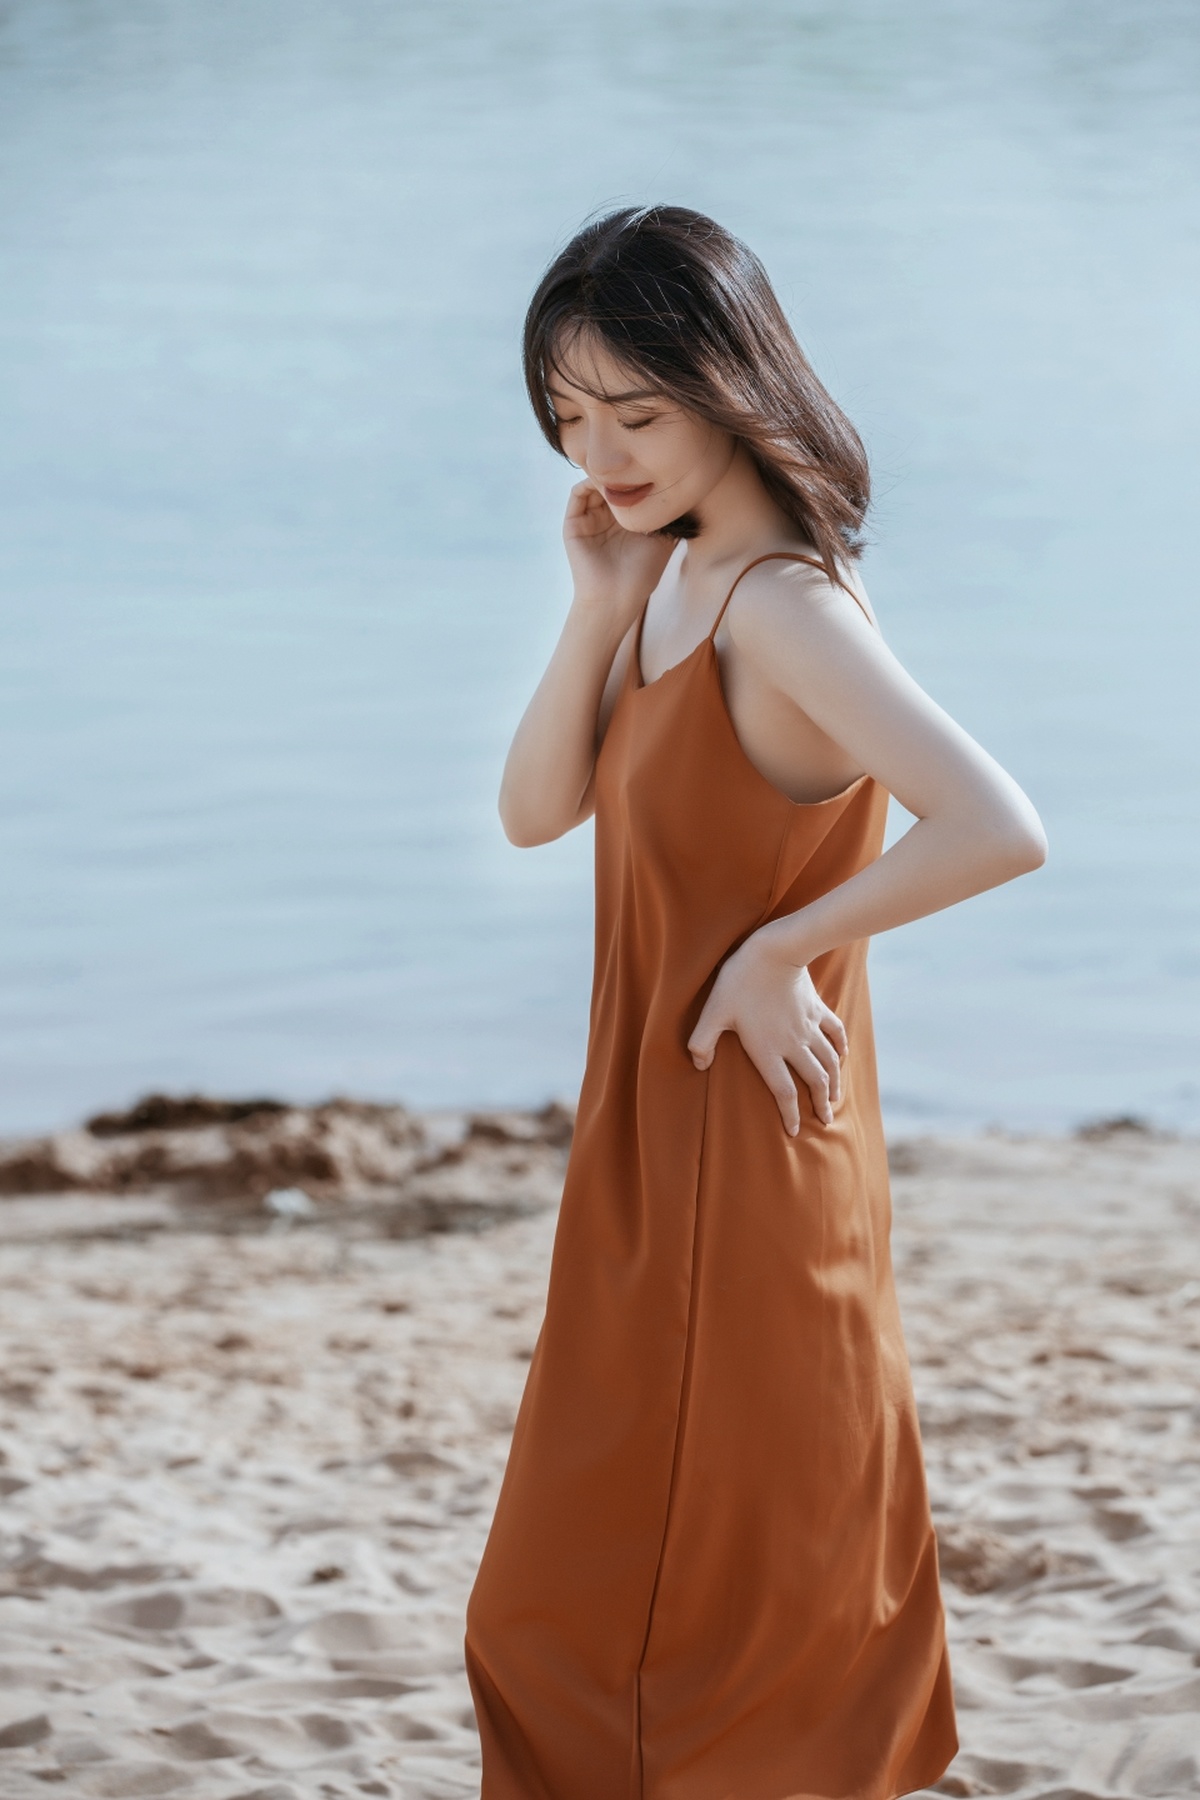 橙色连衣裙的年轻女子在沙滩上行走